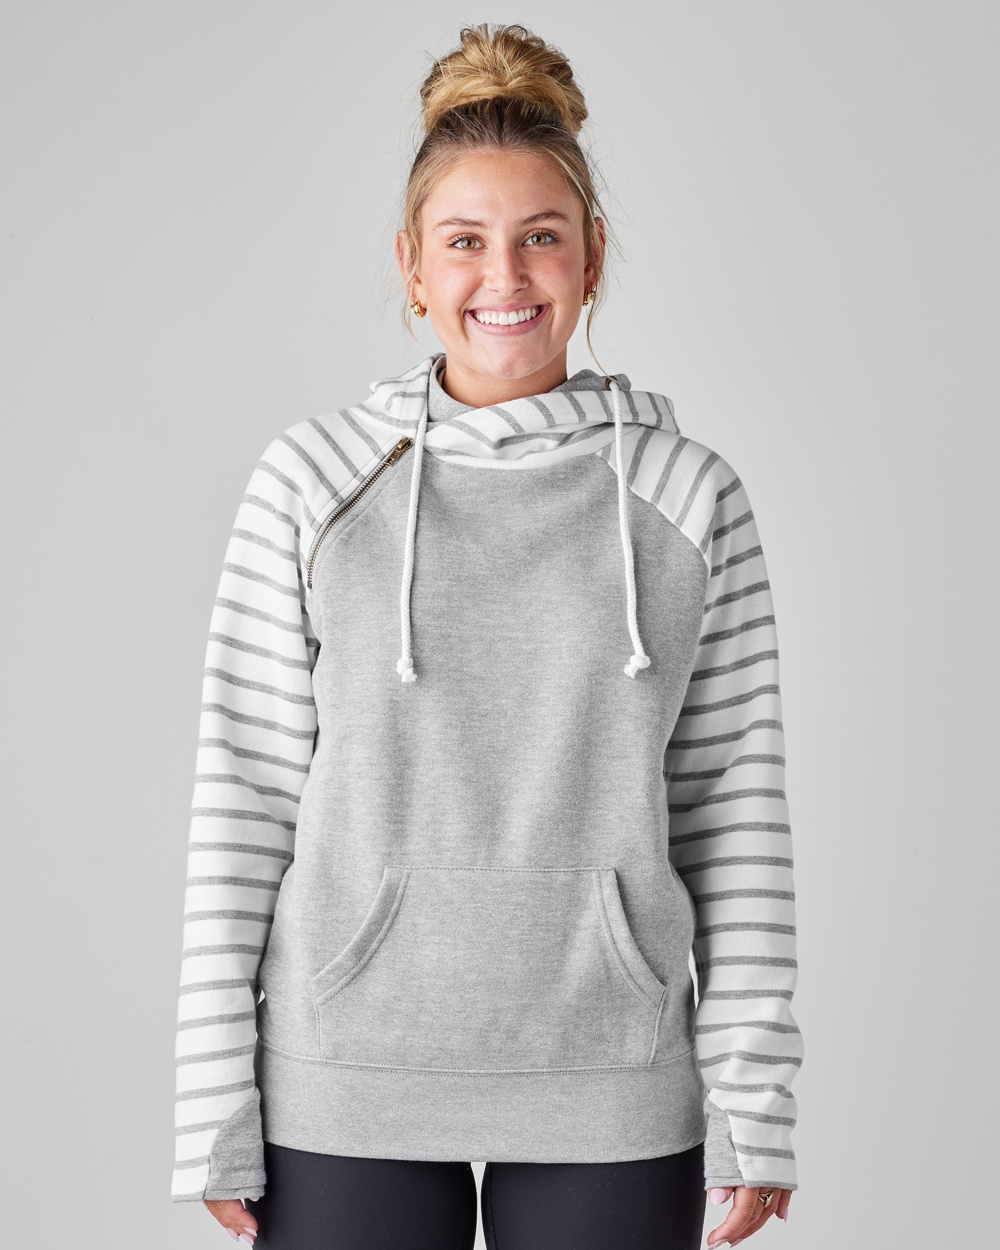 Hanes Womens Sport Performance Fleece Quarter Zip Sweatshirt, XL, Black  Heather 